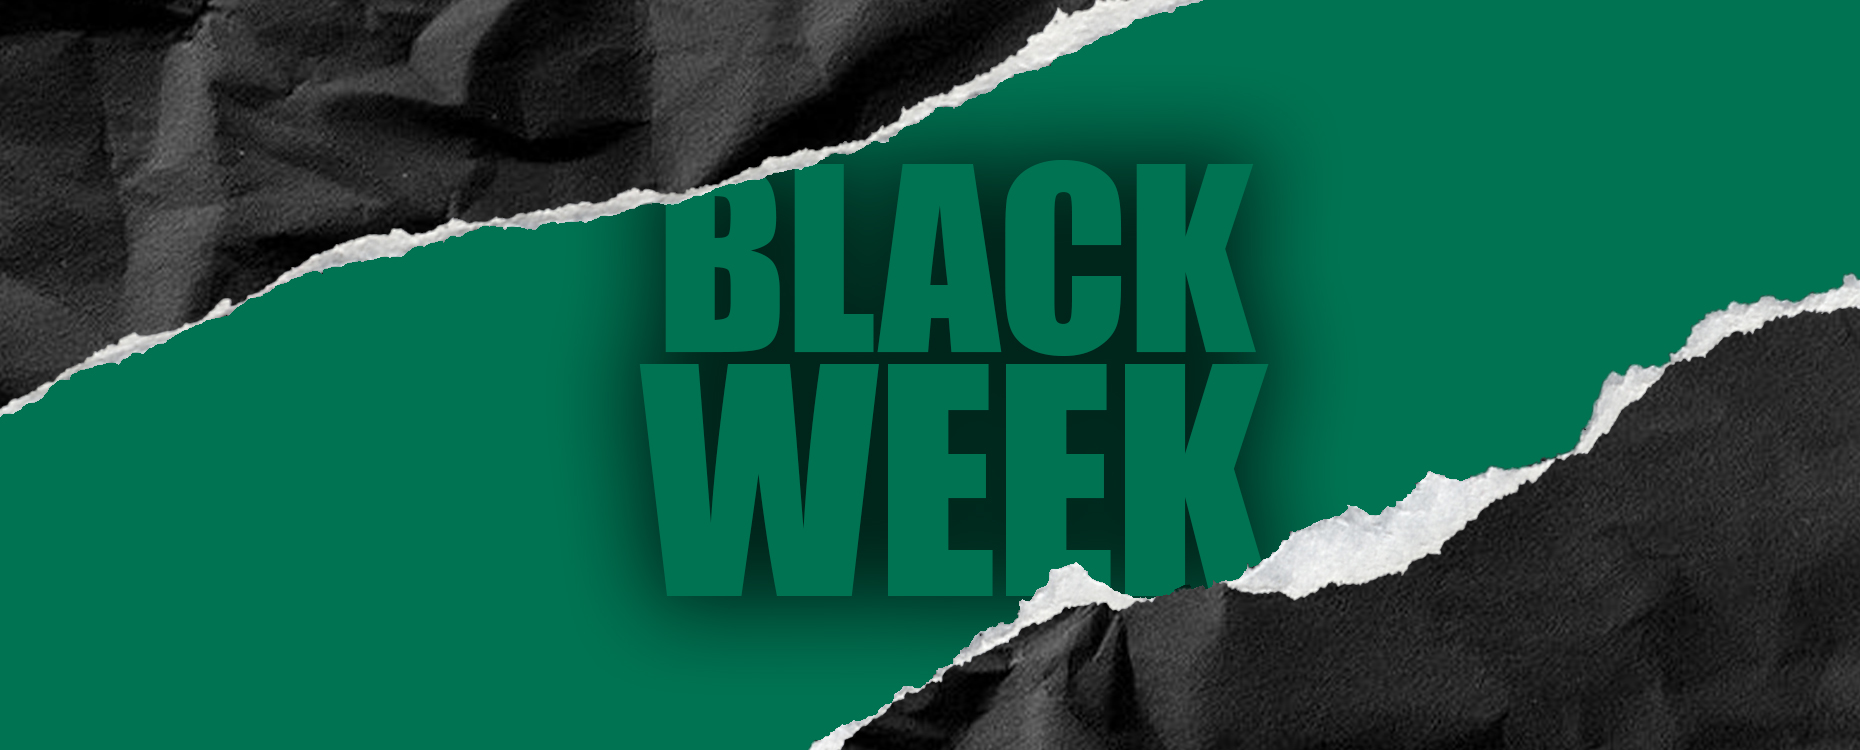 black_week_2